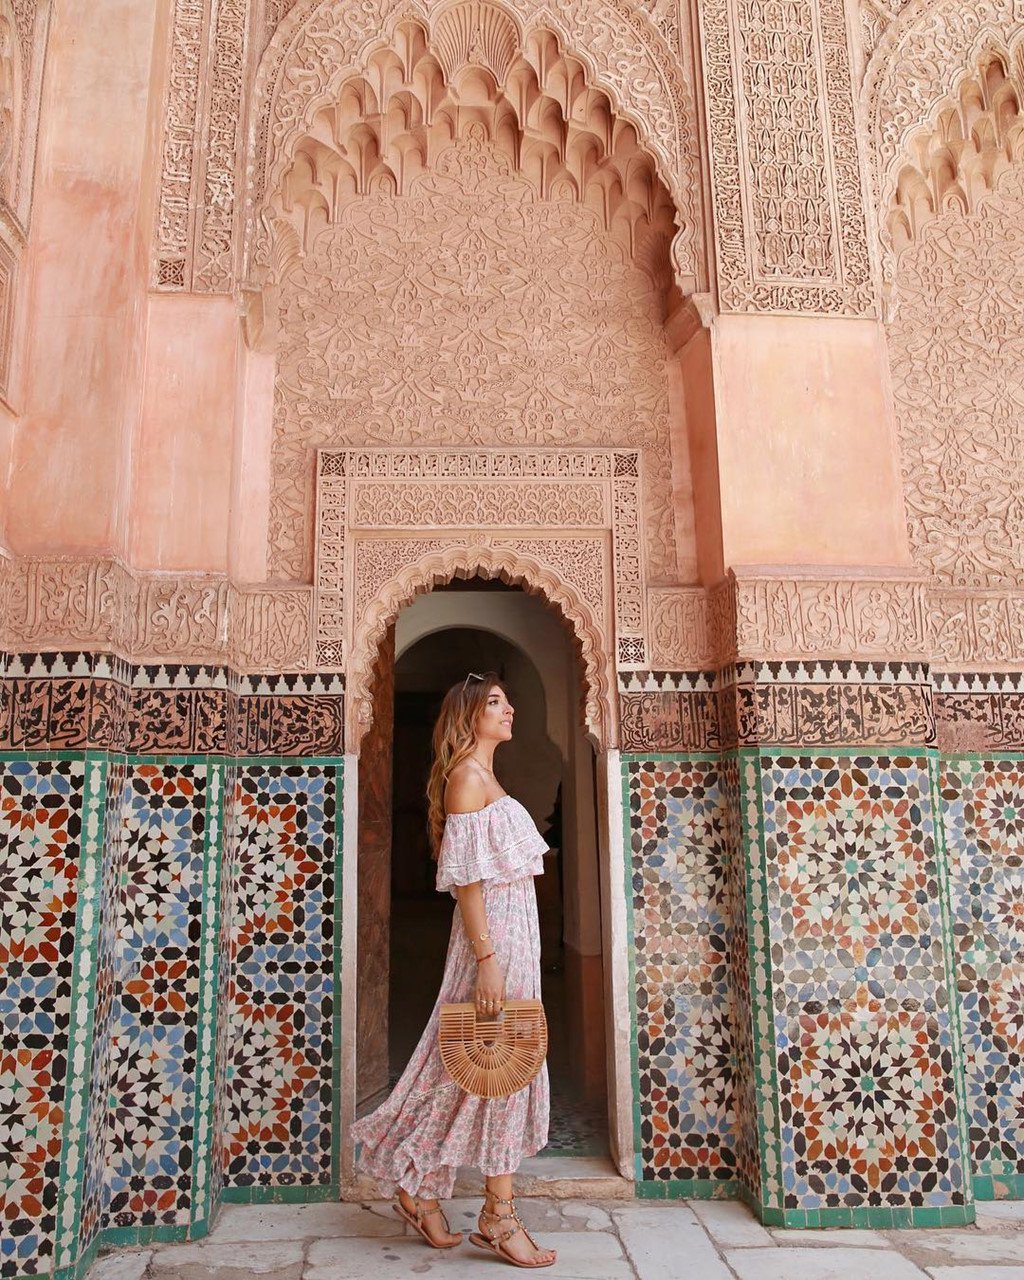 Ben Youssef Madrasa là một trường dạy Hồi giáo ở thành phố Marrakesh, Morocco. Địa điểm này nổi tiếng với lối ra vào trang trí khảm bắt mắt, thu hút đông đảo sự chú ý trên mạng xã hội Instagram. Ảnh: Instagram/amelialiana.